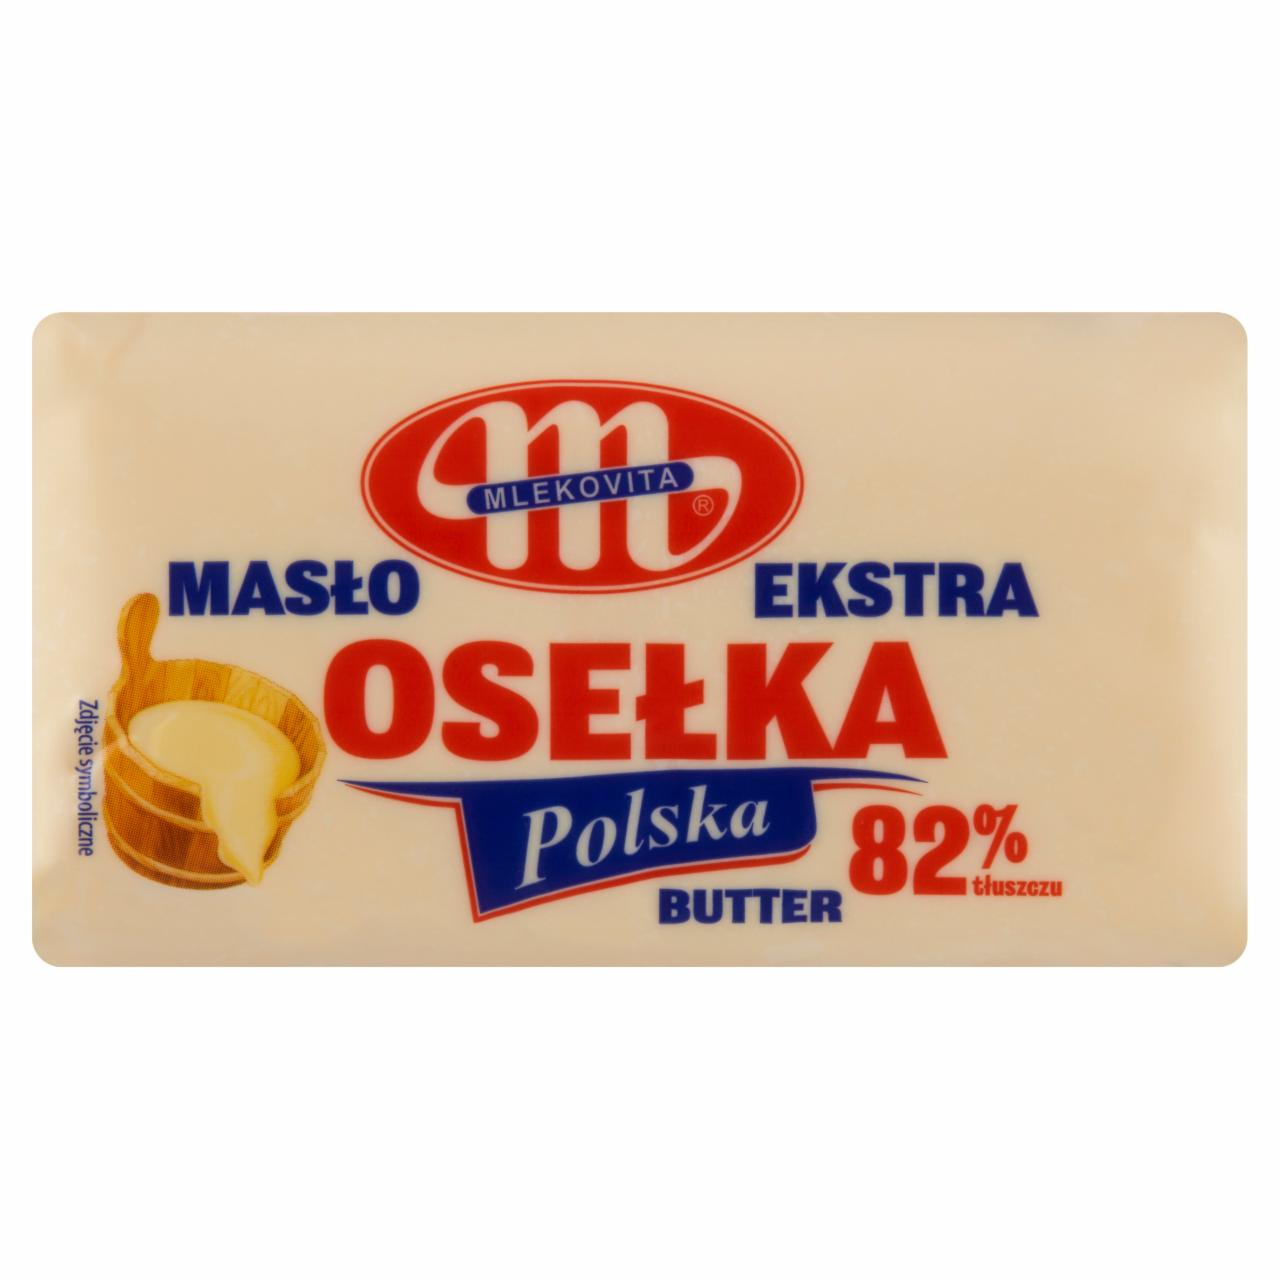 Zdjęcia - Mlekovita Masło ekstra osełka polska 300 g